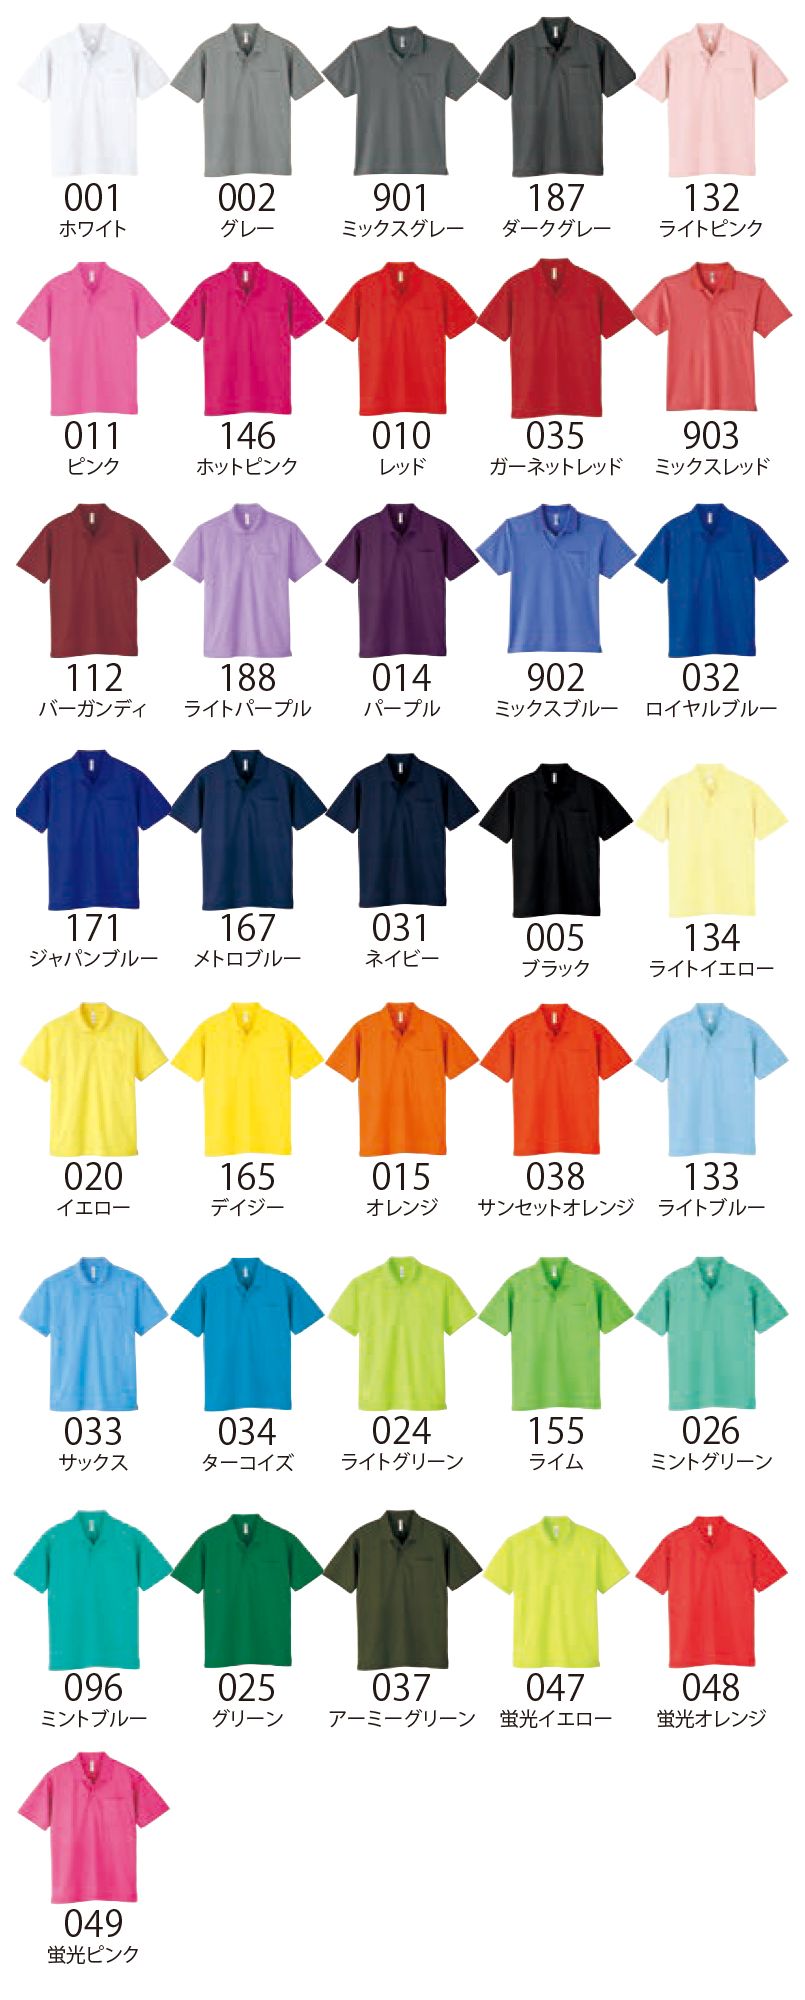 00302-ADP ドライポロシャツ(ポケ無し)(4.4オンス)(男女兼用) 色展開